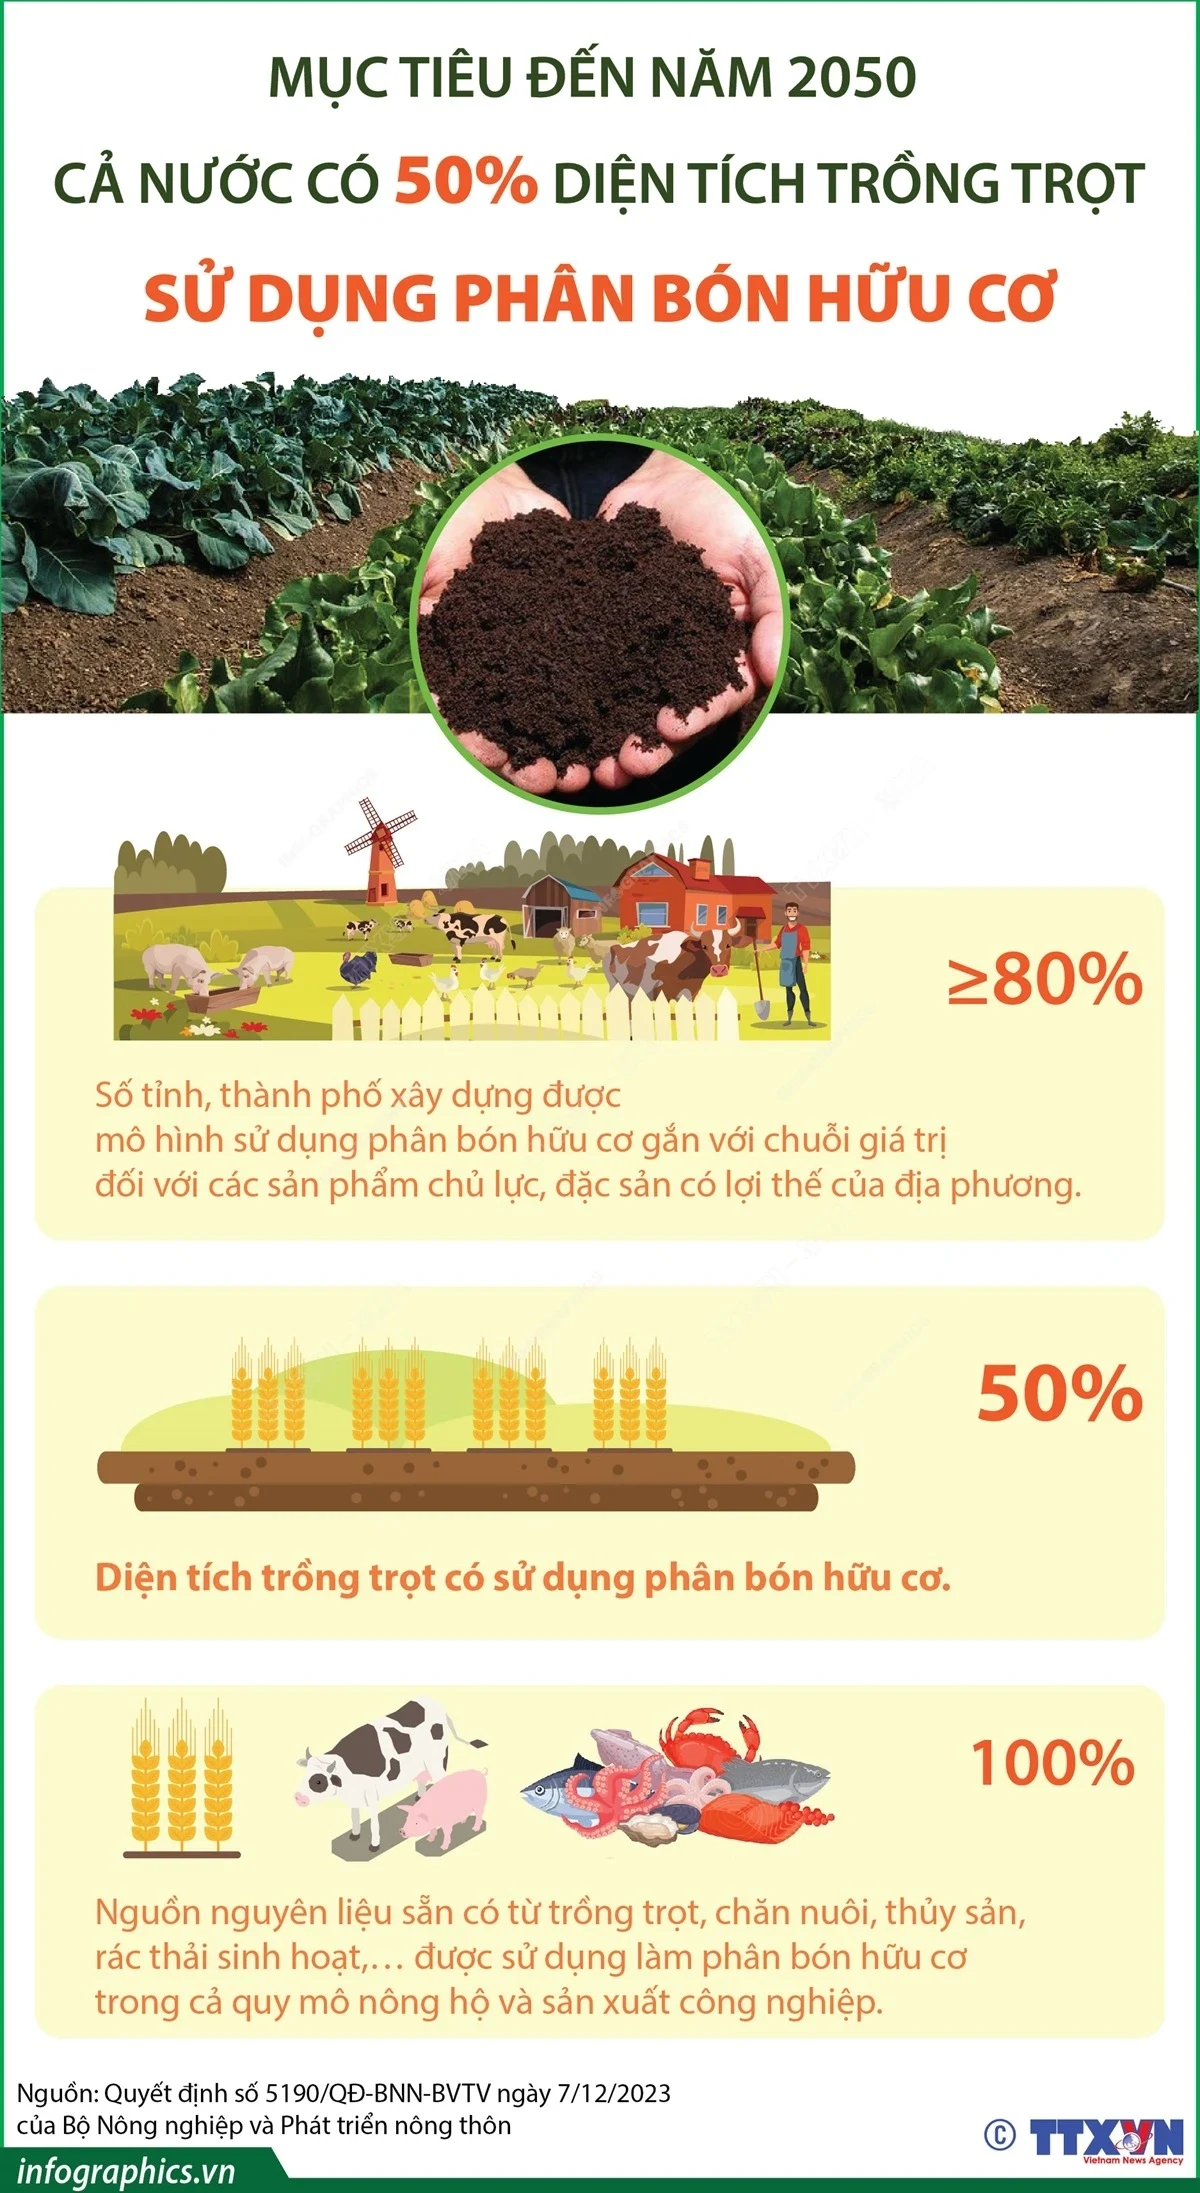 Đến năm 2050, cả nước có 50% diện tích trồng trọt sử dụng phân bón hữu cơ